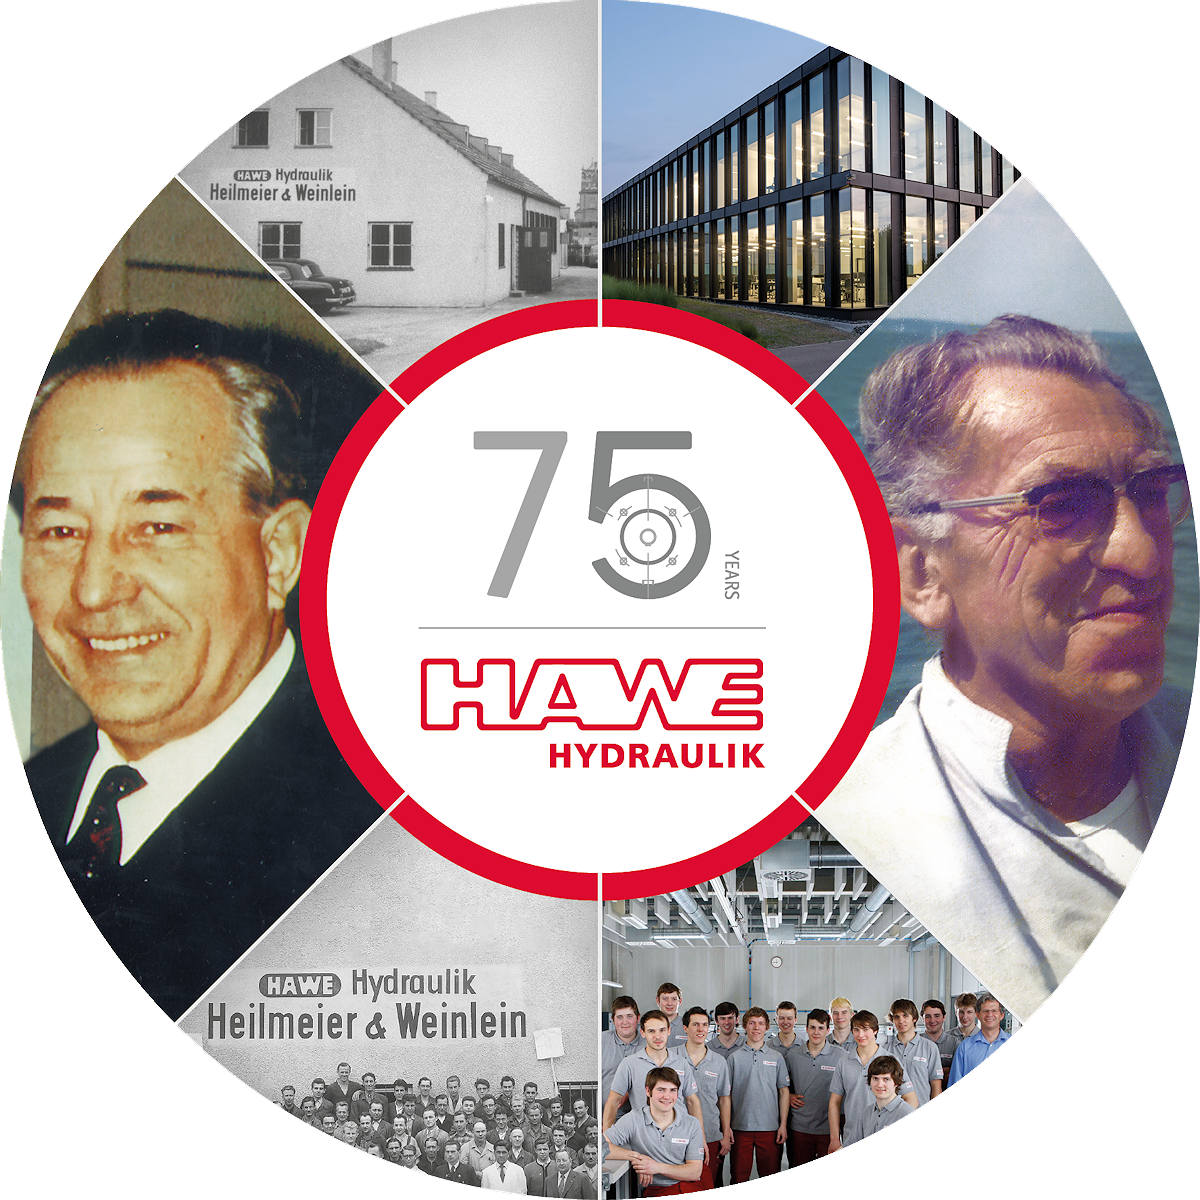 75 Jahre Hydraulik, 3 Generationen Familienbetrieb – die Firmengeschichte von 1949 bis heute im Überblick